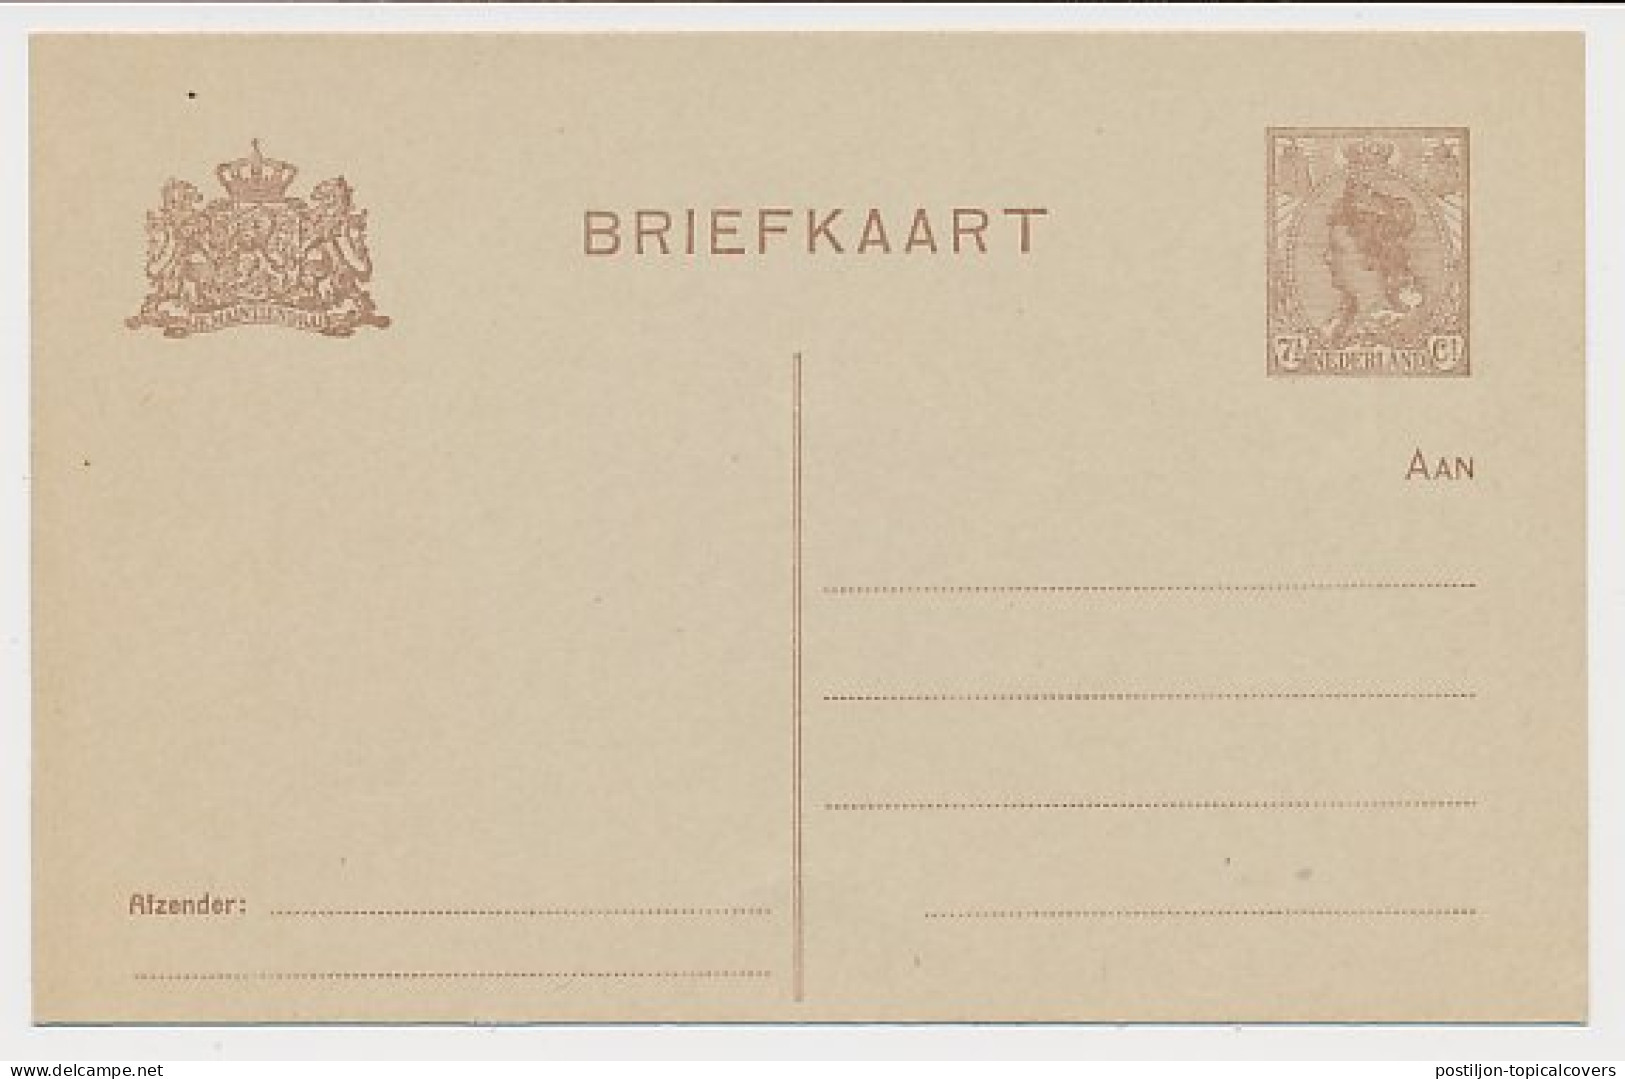 Briefkaart G. 191 - Entiers Postaux